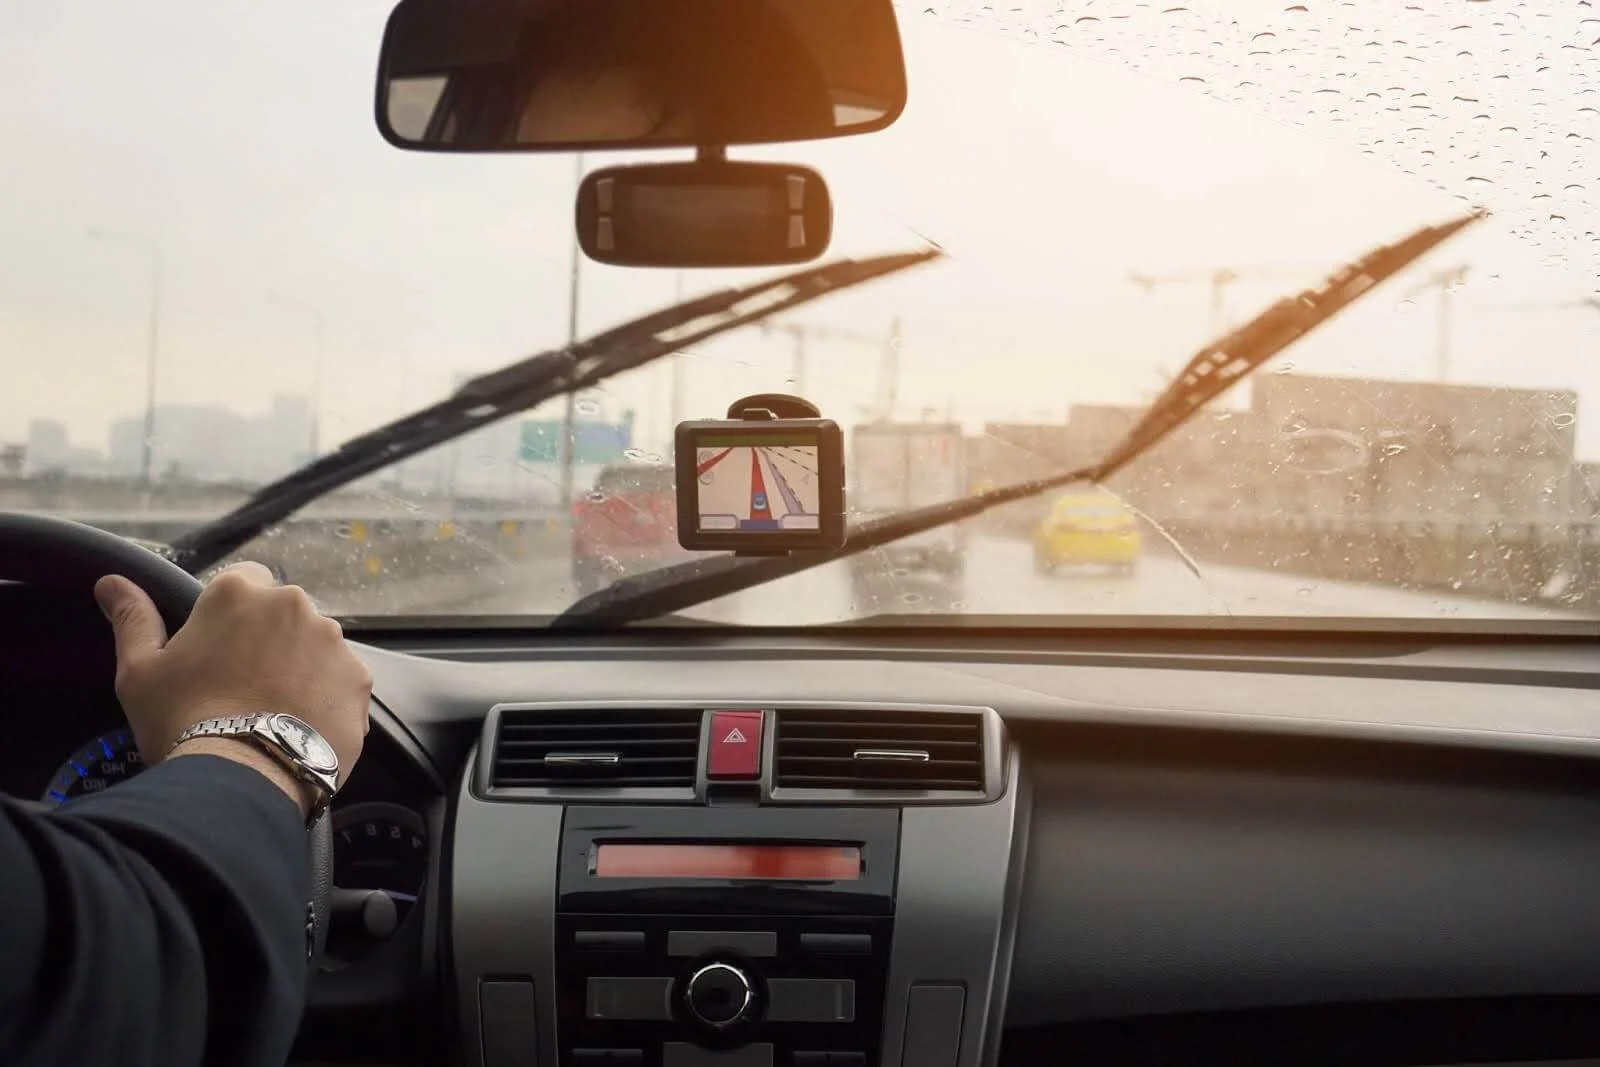 Na imagem há a visão interna de um motorista dirigindo o carro no trânsito olhando para o para-brisa com o vidro embaçado.